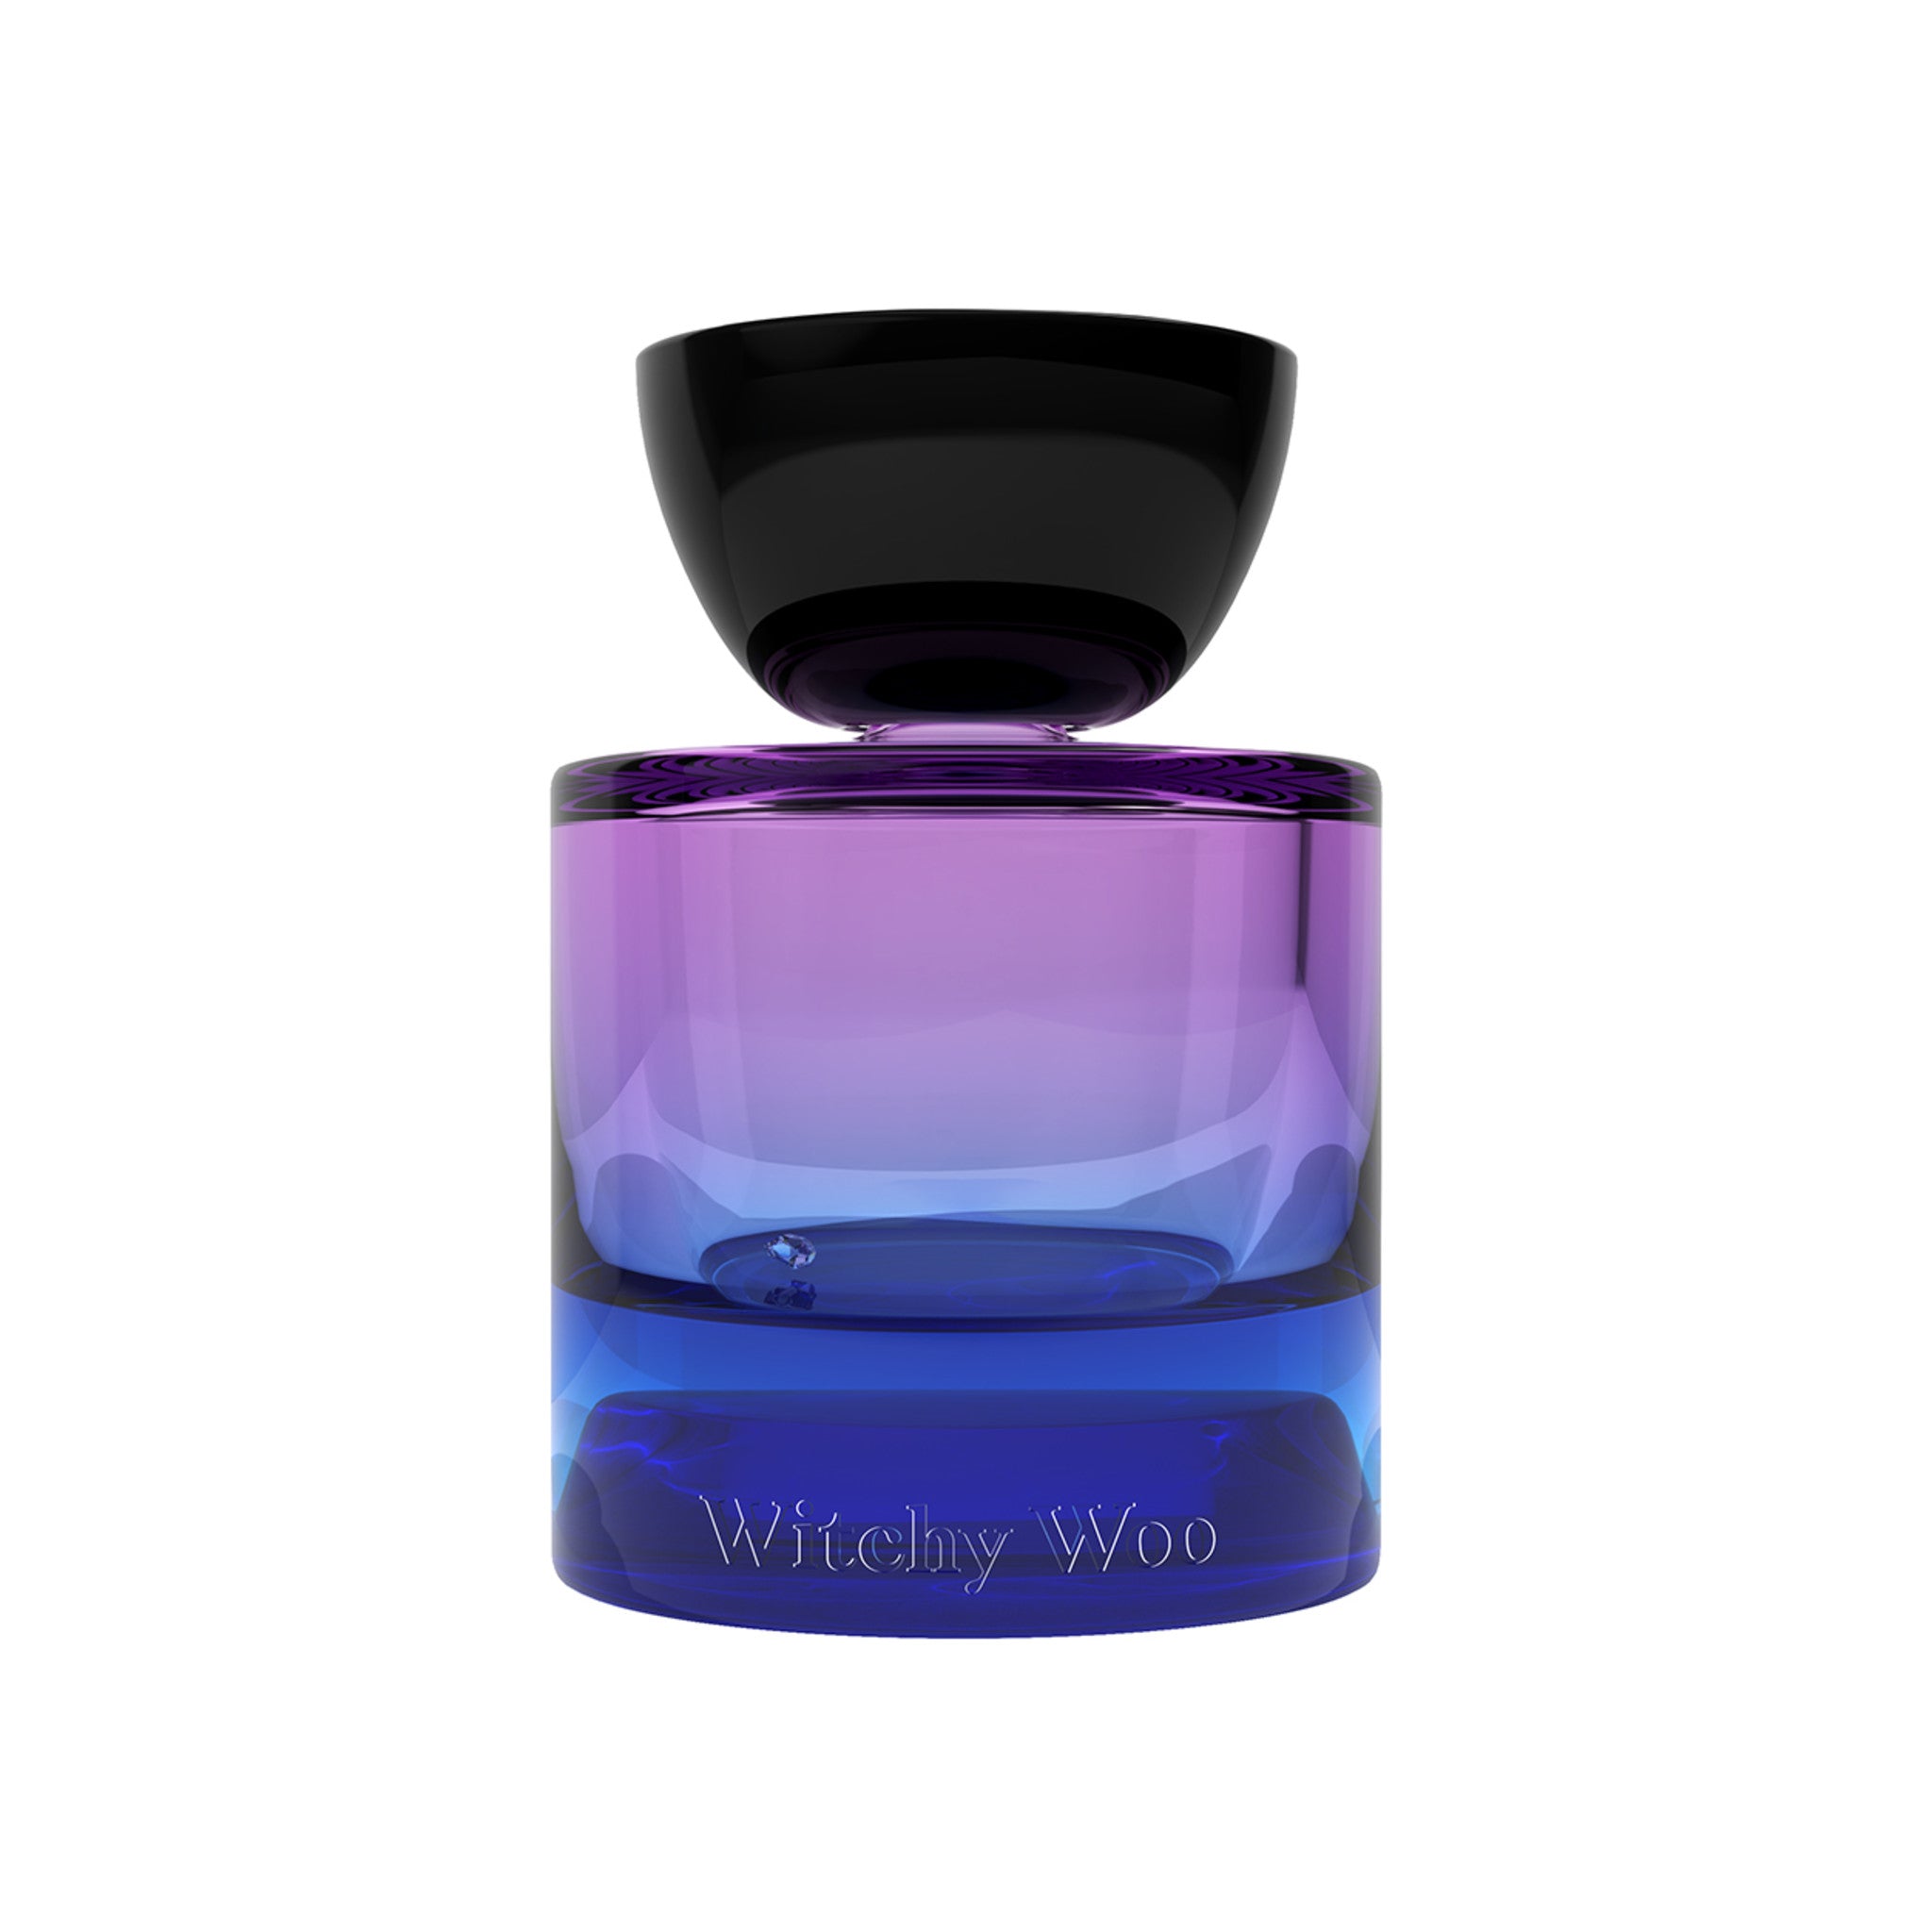 Vyrao Witchy Woo Eau de Parfum Size variant: 1.69 fl oz main image.